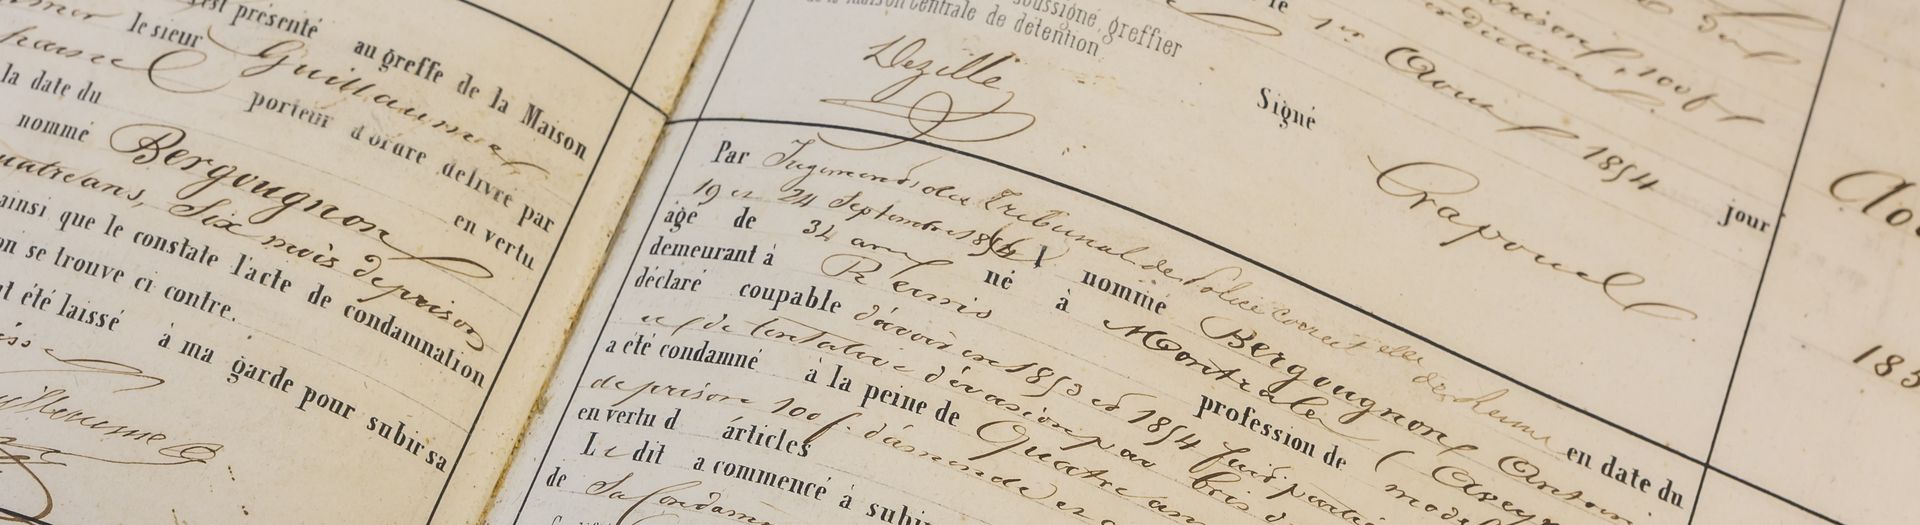 Documents_Archives départementales du Morbihan